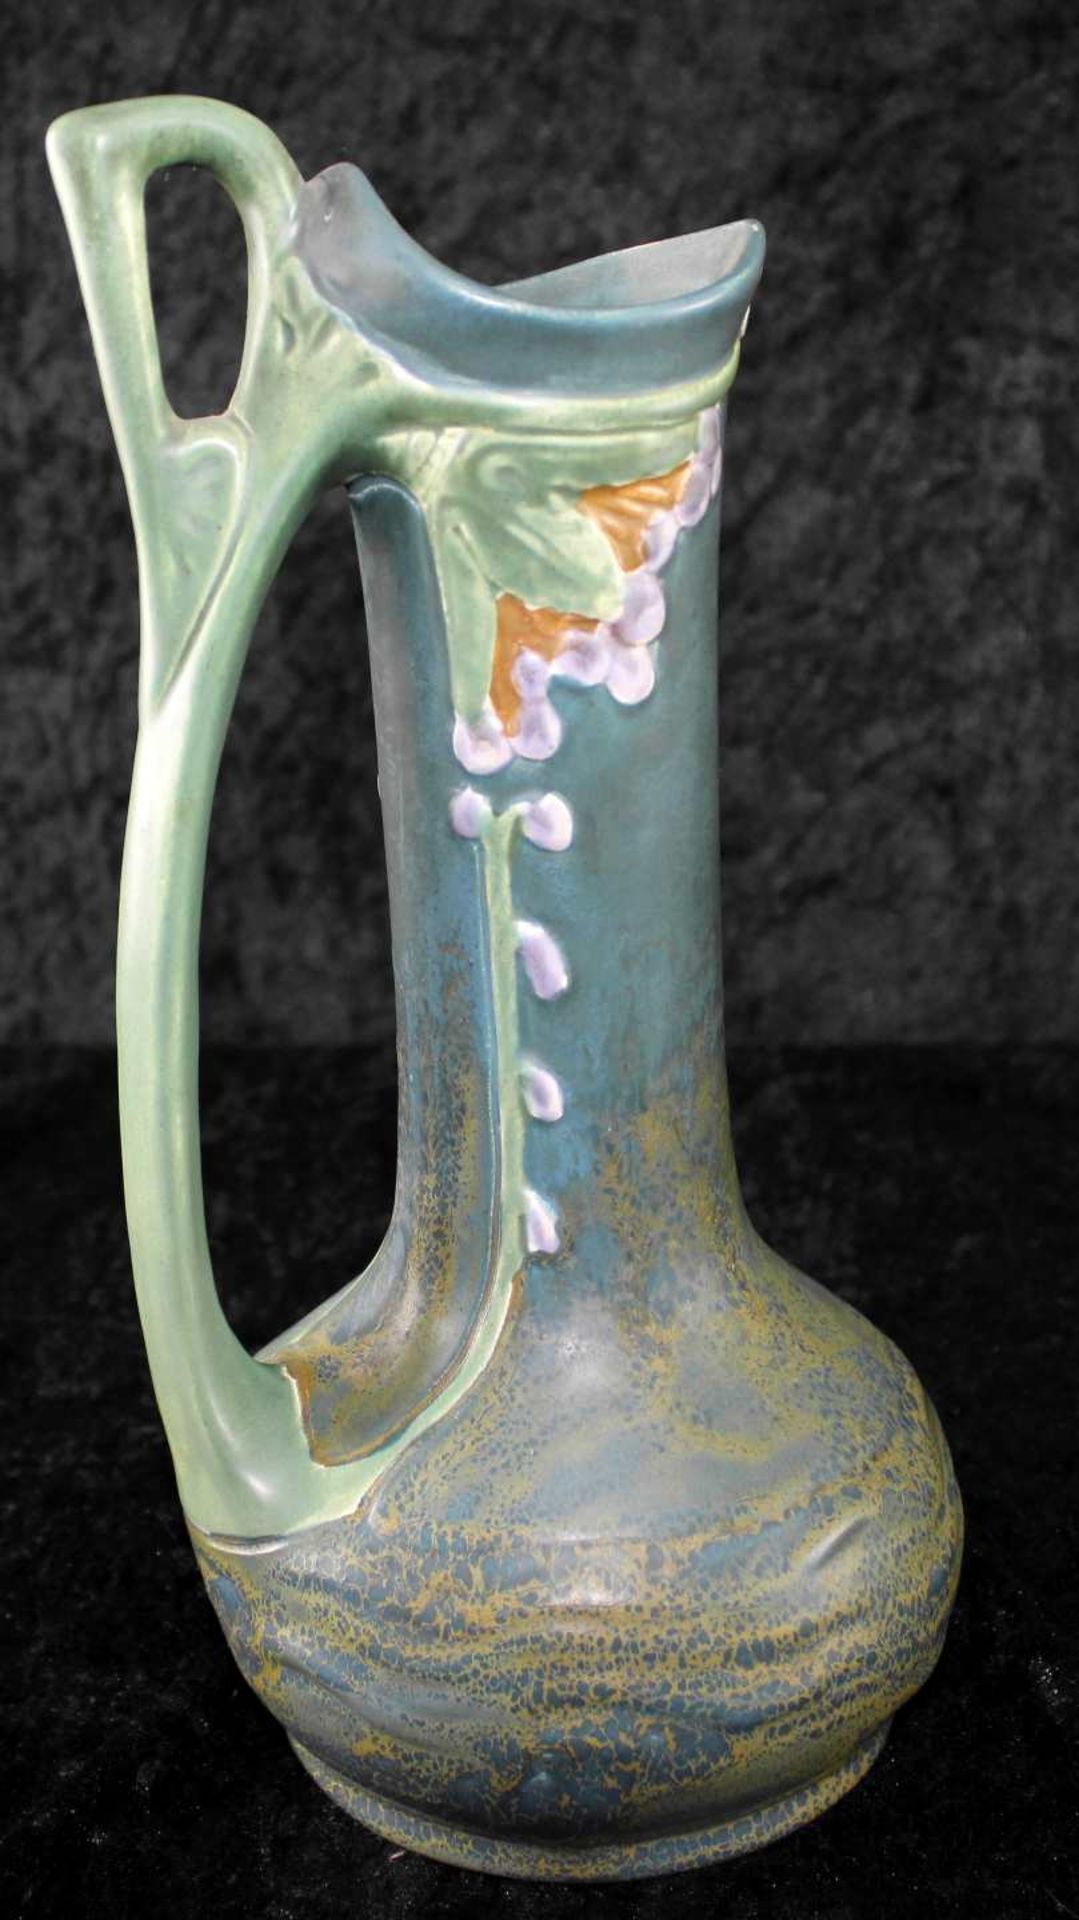 Vertiko Keramik- Set, 3-tlg., Jardiniere u. zwei Vasen, Austria Keramik, Jugendstil um 1900 - Bild 4 aus 4